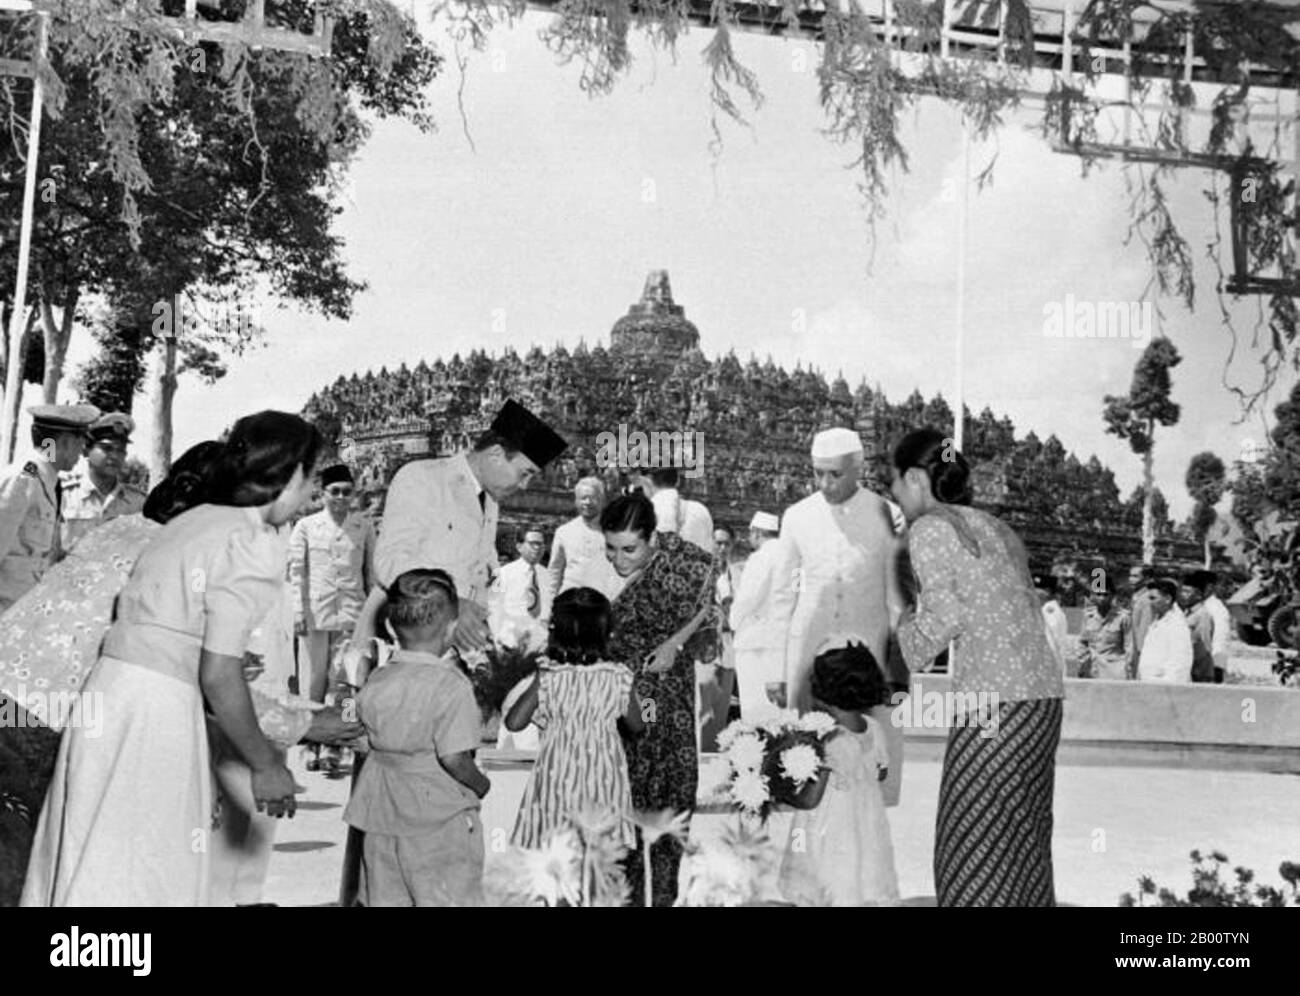 Indonesien: Präsident Sukarno und der indische Premierminister Jawaharlal Nehru beobachten, wie Indira Gandhi während eines Besuchs in Borobudur Blumen empfängt. Sukarno wurde am 6. Juni 1901 in Blitar, Ost-Java, geboren. Sein Name war Kusno Sosrodihardjo, aber er wurde nach javanesischem Brauch umbenannt, nachdem er eine Kinderkrankheit überlebt hatte. Sein Name wird häufig Soekarno nach der niederländischen Schreibweise geschrieben. Am 4. Juli 1927 gründeten Sukarno und einige Freunde das Partai Nasional Indonesia (PNI), um für die Unabhängigkeit Indonesiens zu kämpfen. Sukarno wurde 1930 als politischer Gefangener verurteilt, aber 1931 freigelassen. Stockfoto